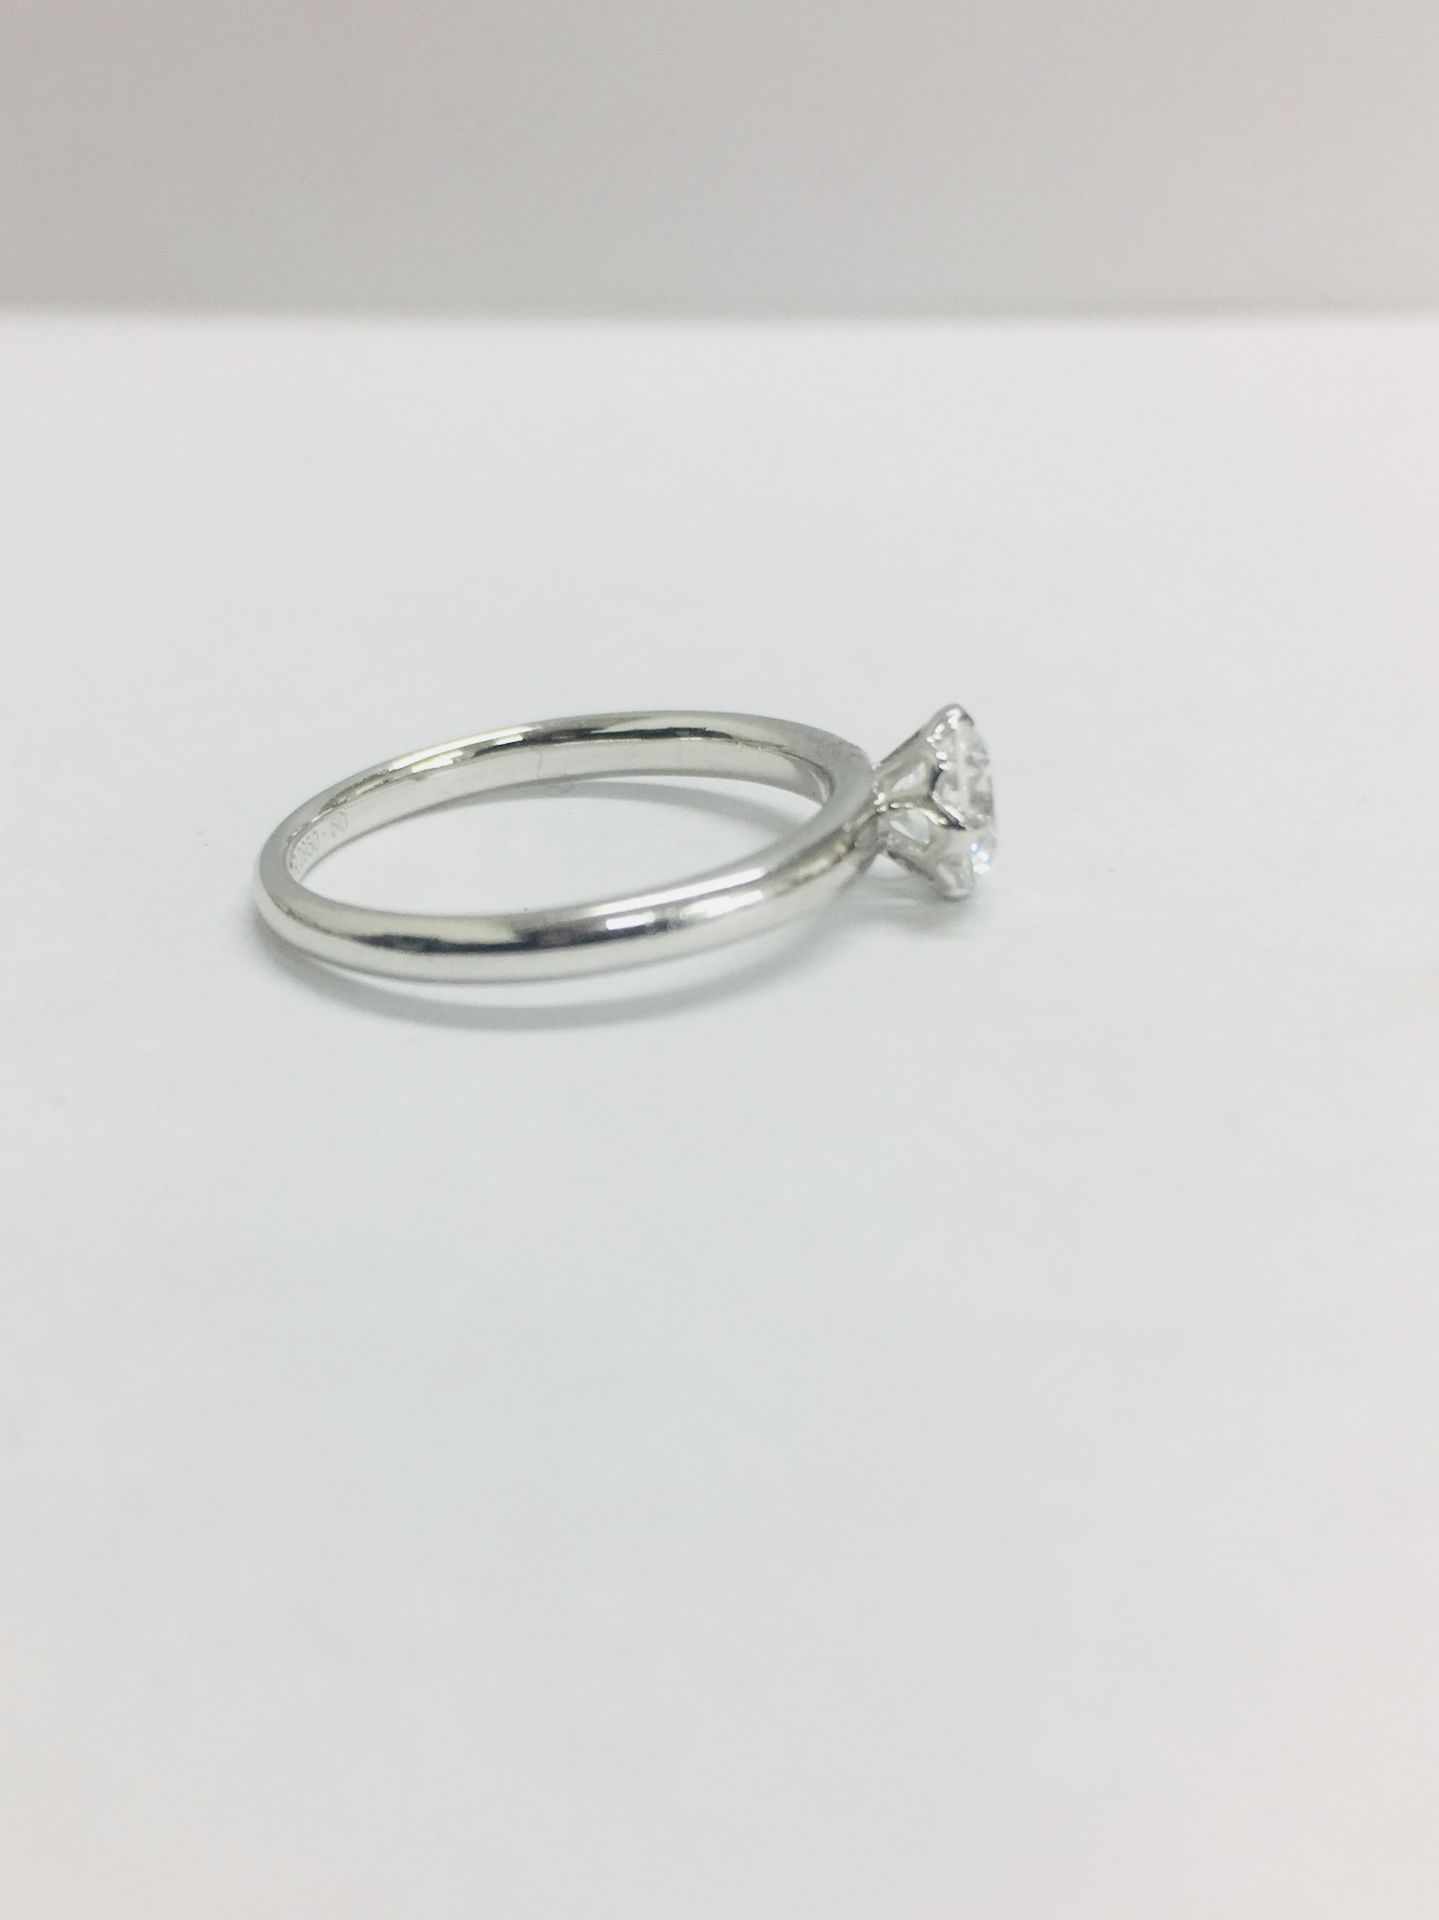 Platinum diamond solitaire ring,0.50ct brillliant cut diamond h colour vs clarity(clarity enhanced), - Bild 6 aus 6